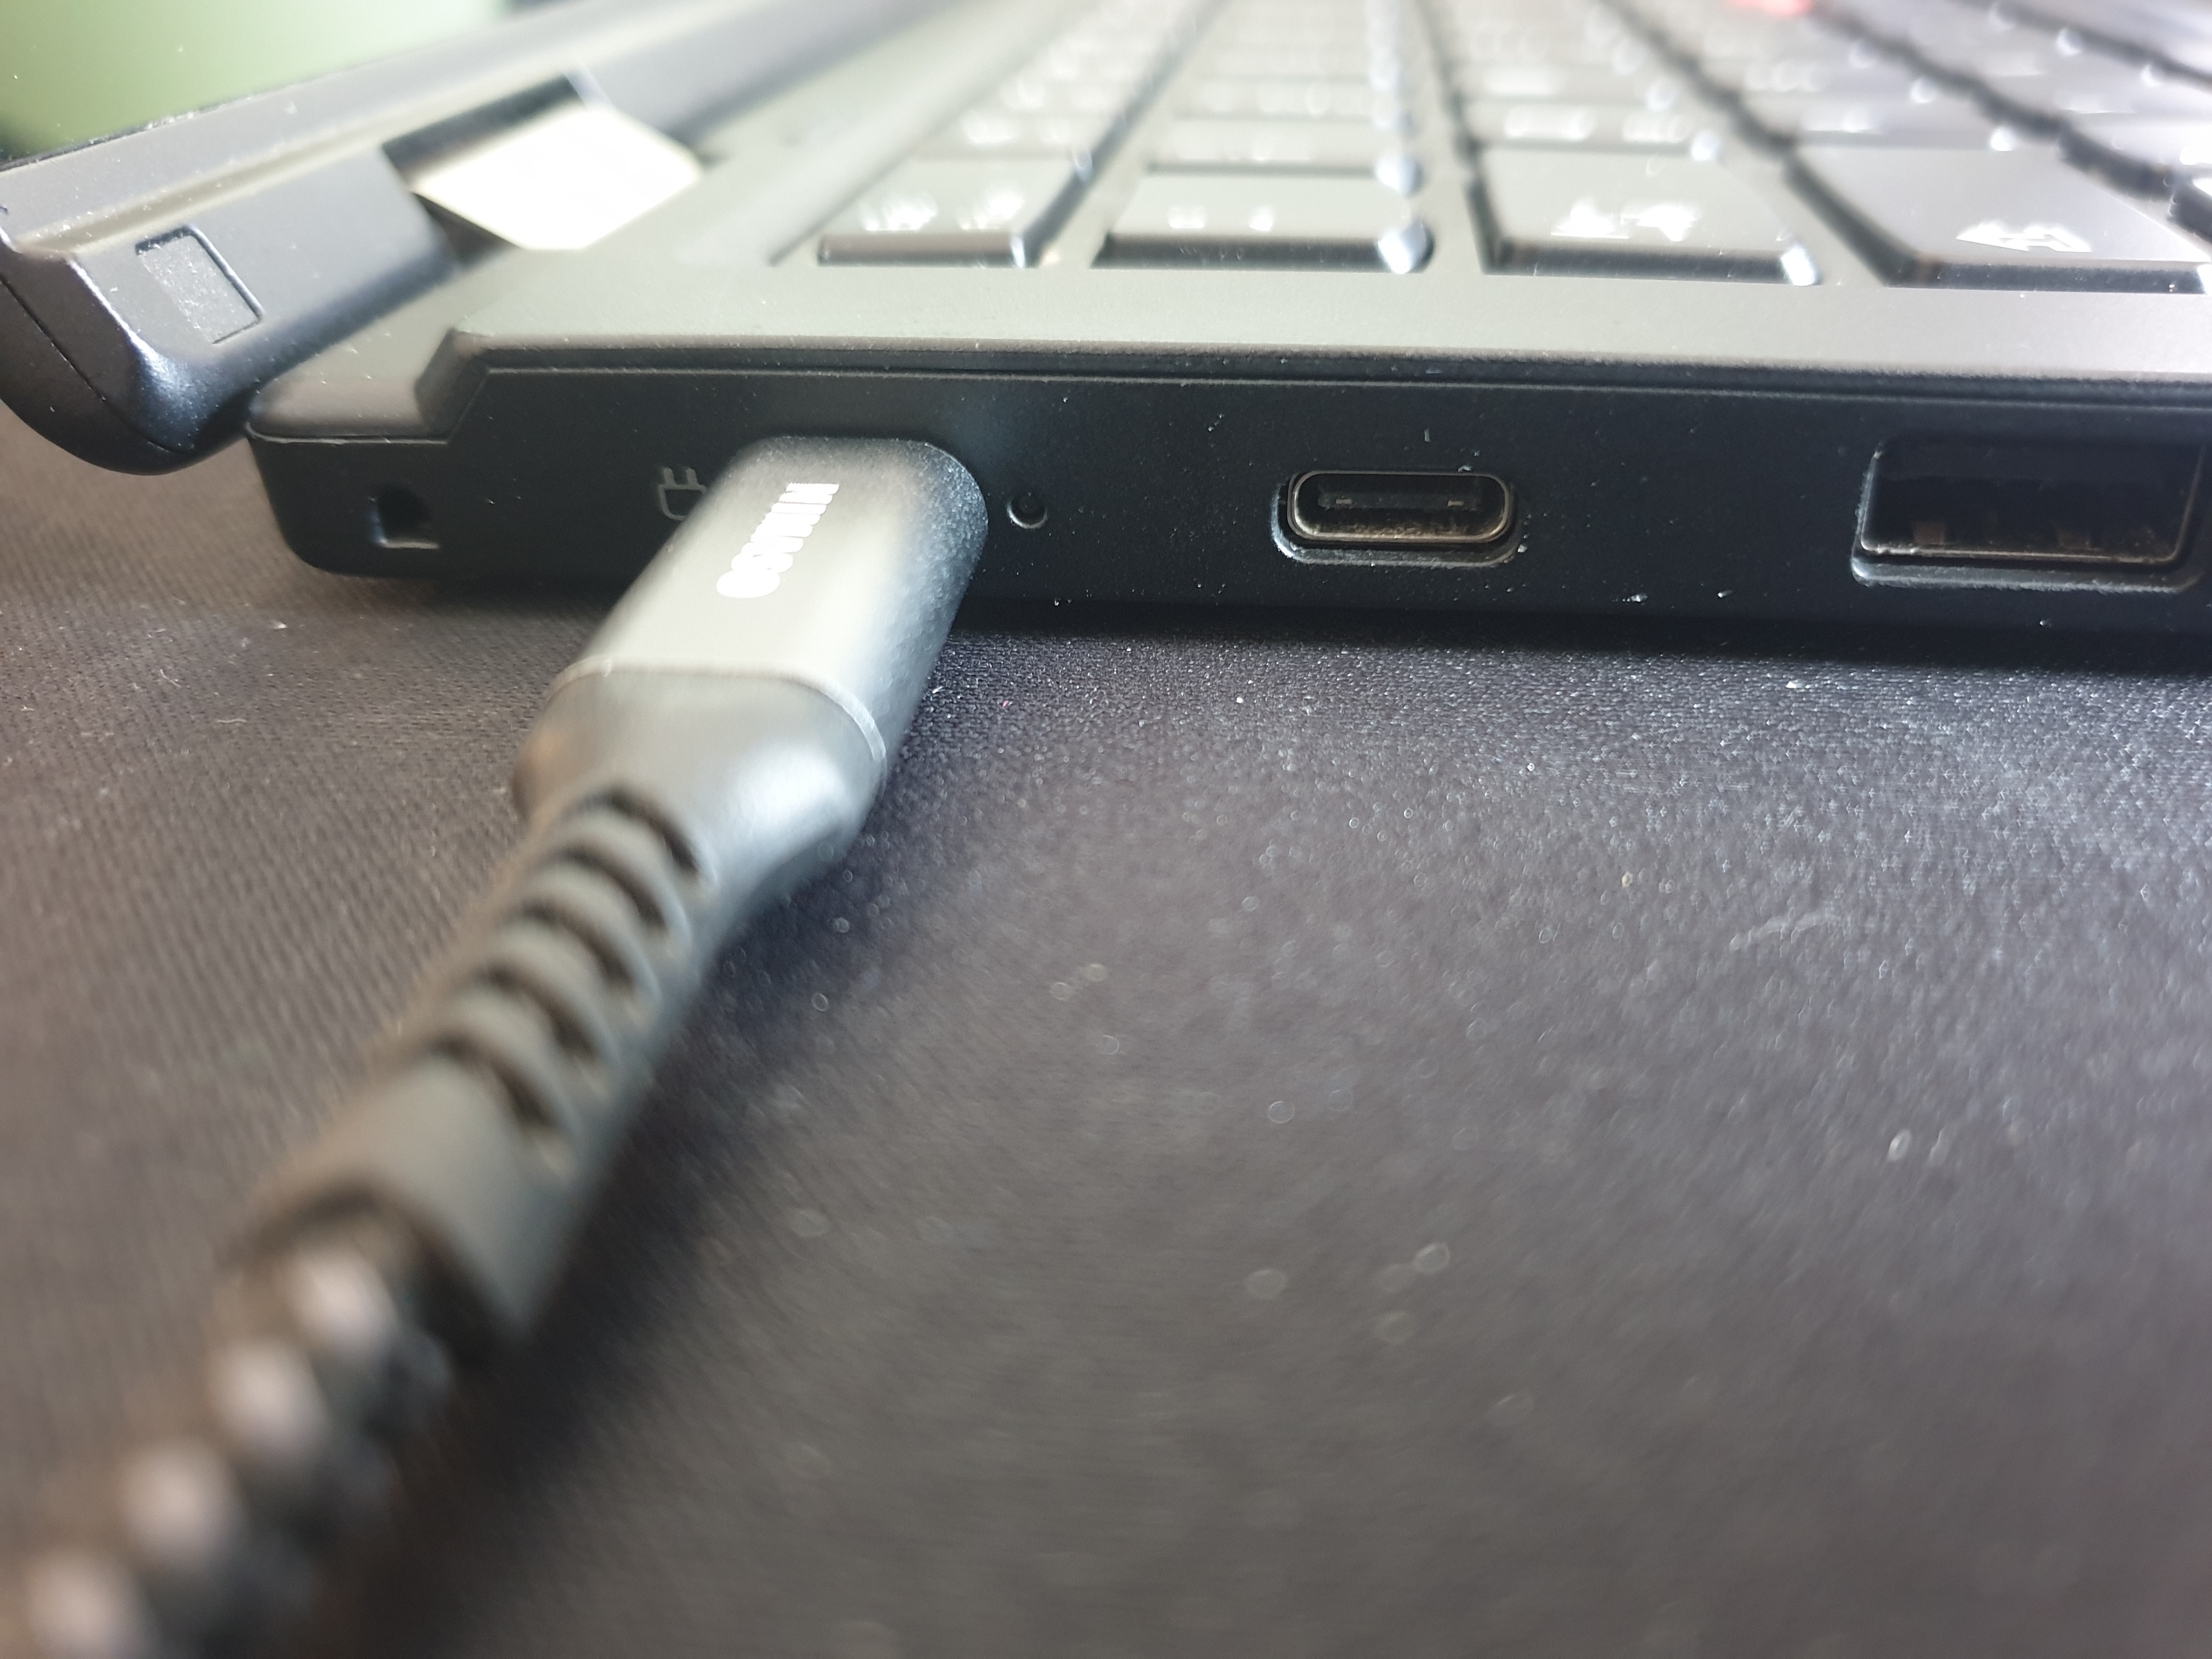 USB-C-charging-port-broken-Tinkpad-L380 - English Community - LENOVO  COMUNIDAD